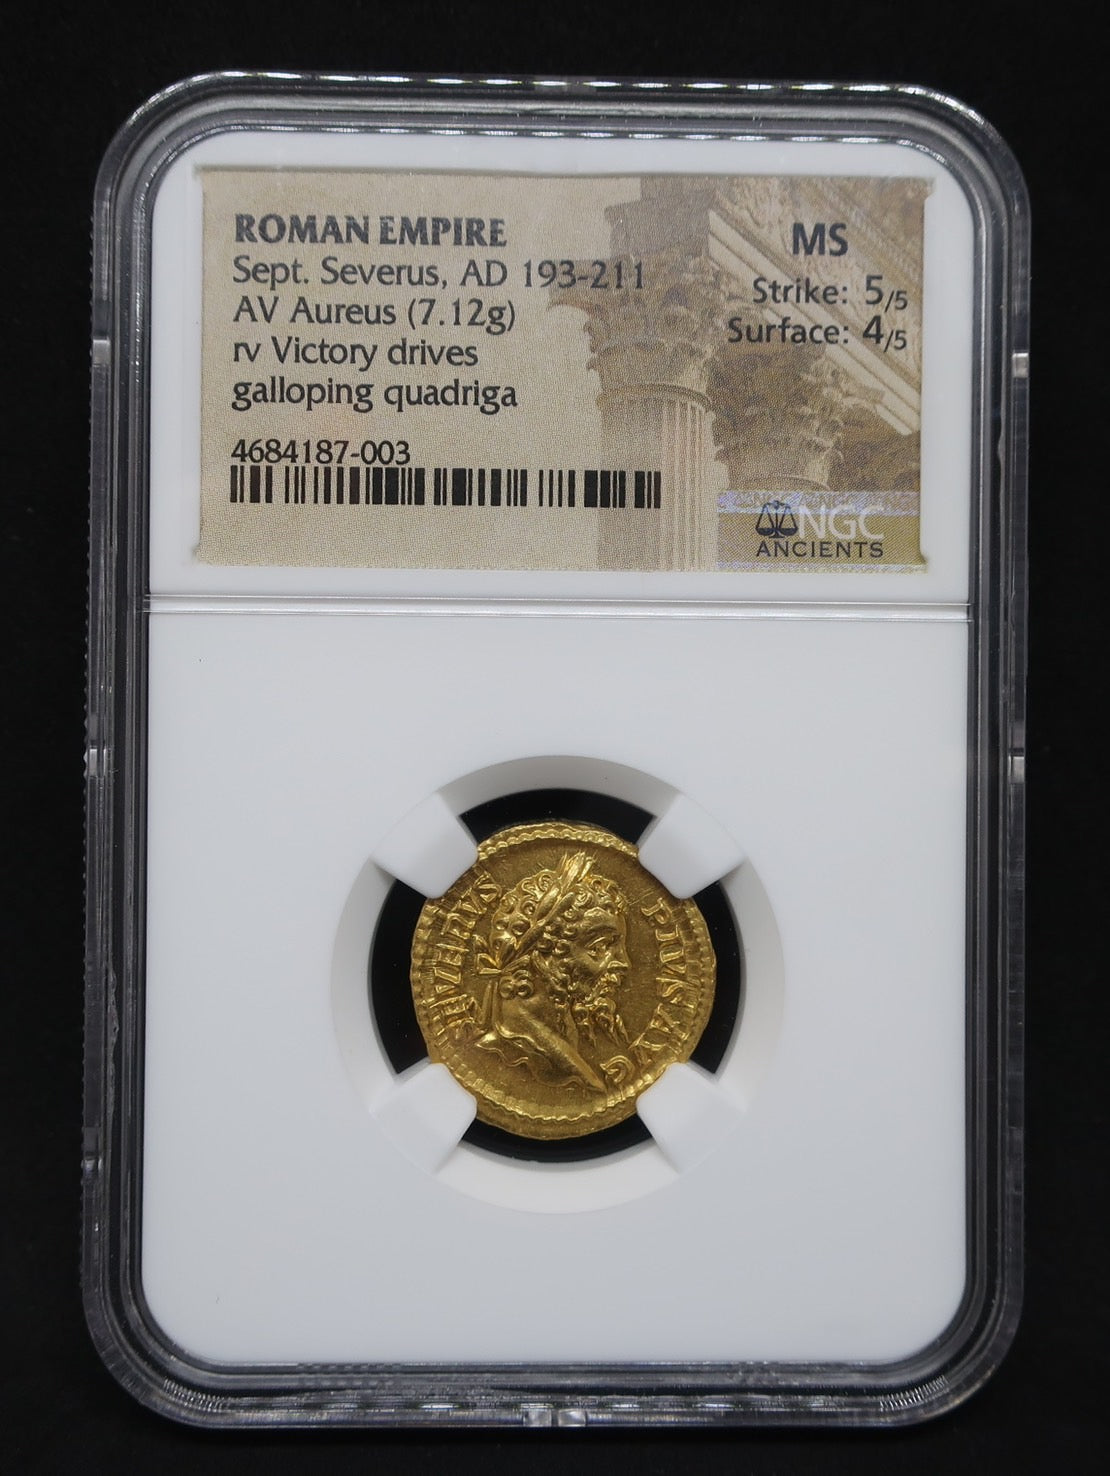 AD193-211 ローマ帝国 アウレウス金貨 セプティミウス セウェルス MS5